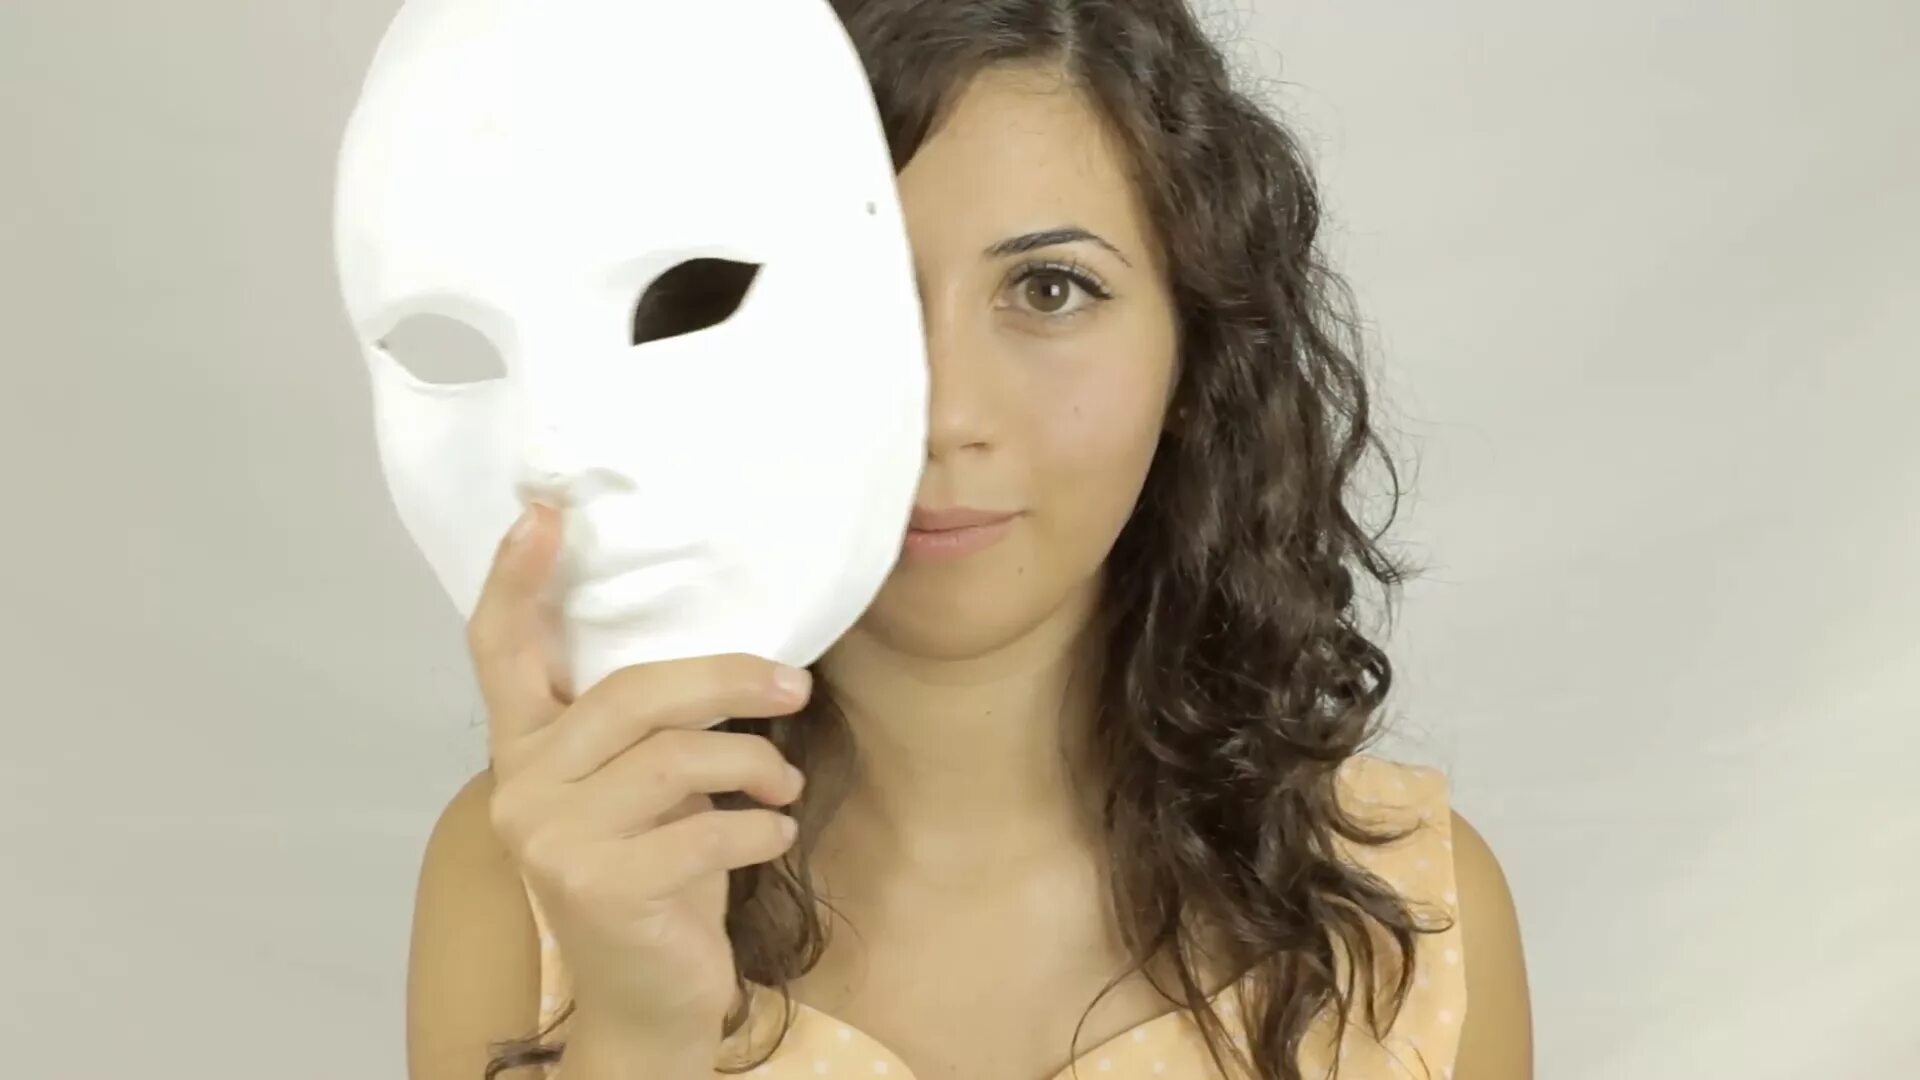 Маска. Маска женская. Роли маски. Маска женского лица. Фото жены маска